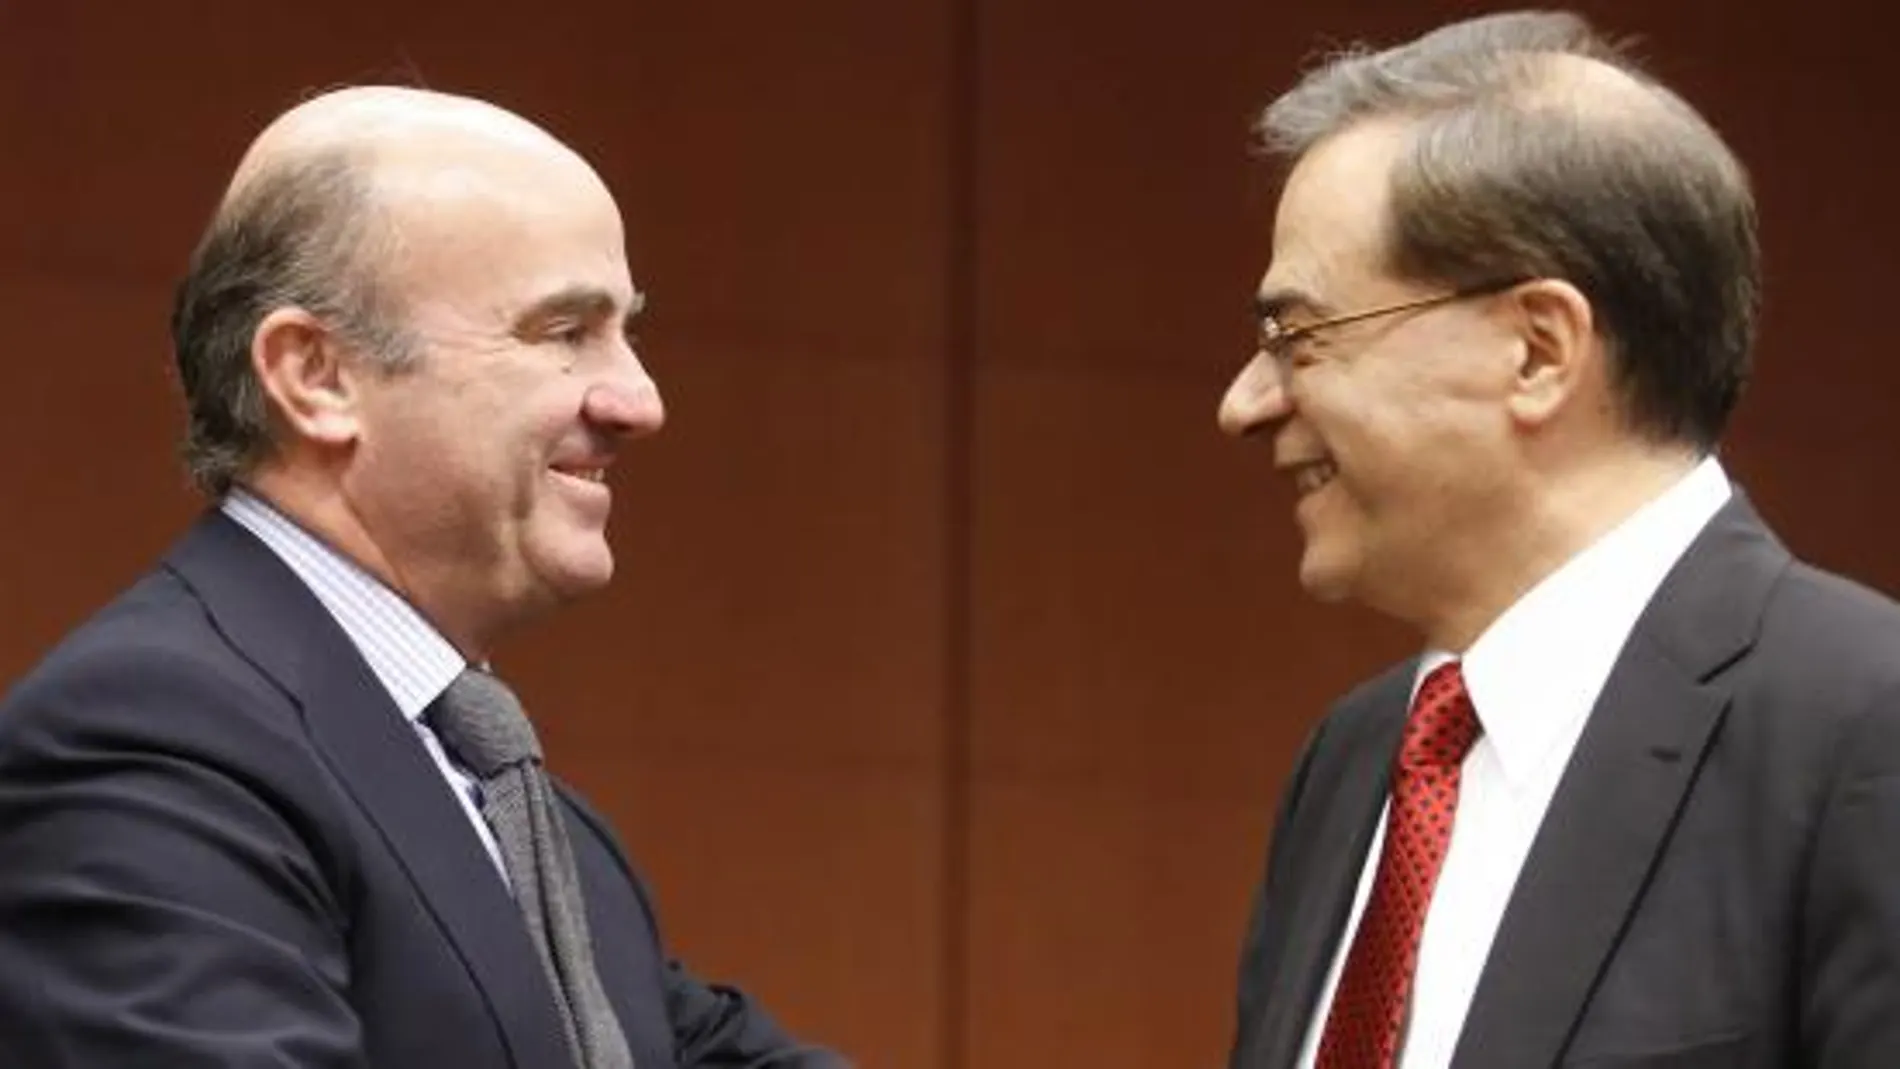 El ministro español de Economía, Luis de Guindos, habla con el ministro griego de Finanzas, Gikas Hardouvelis.